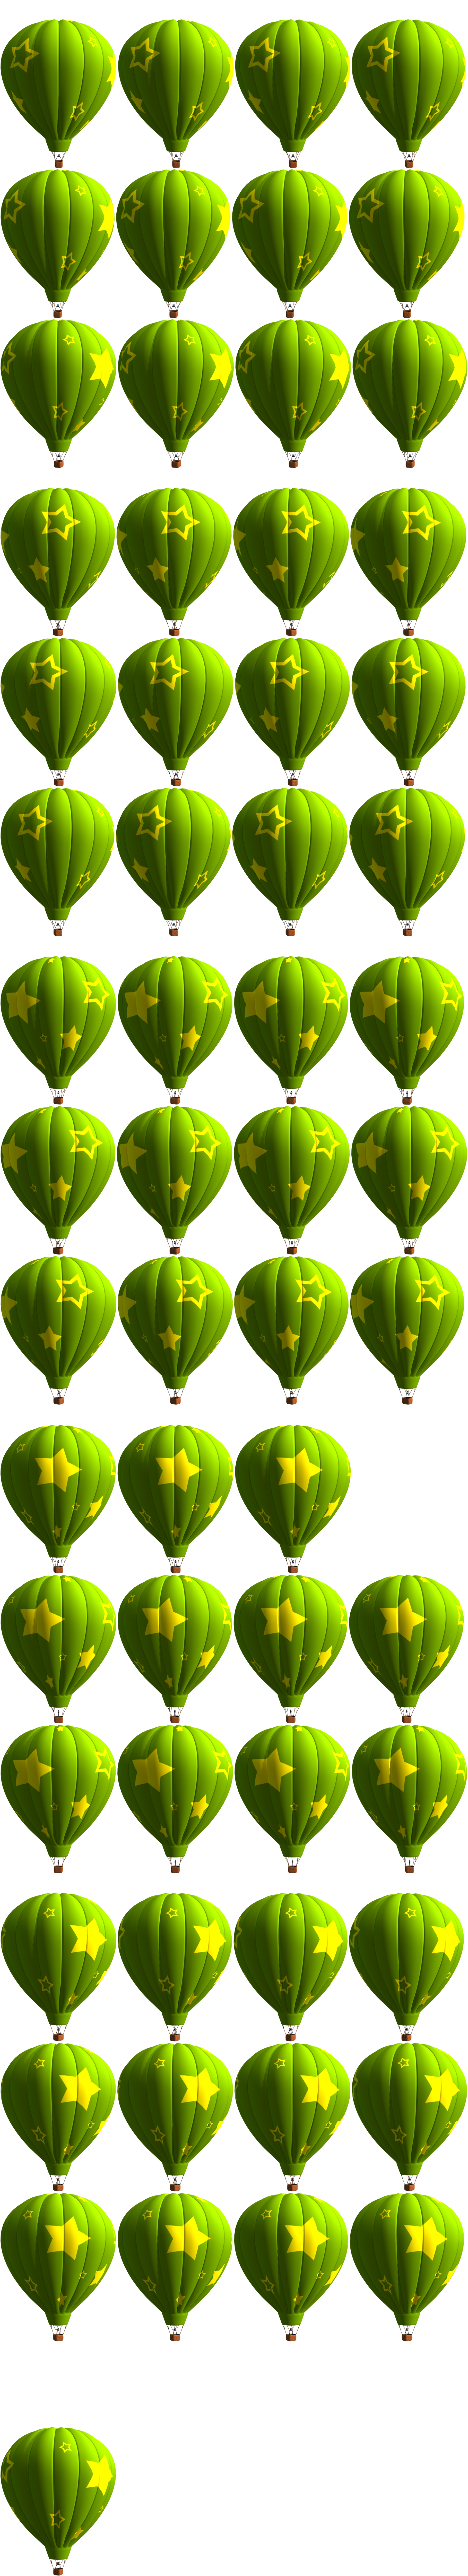 KID PIX 5: The STEAM Edition - Green Air Balloon